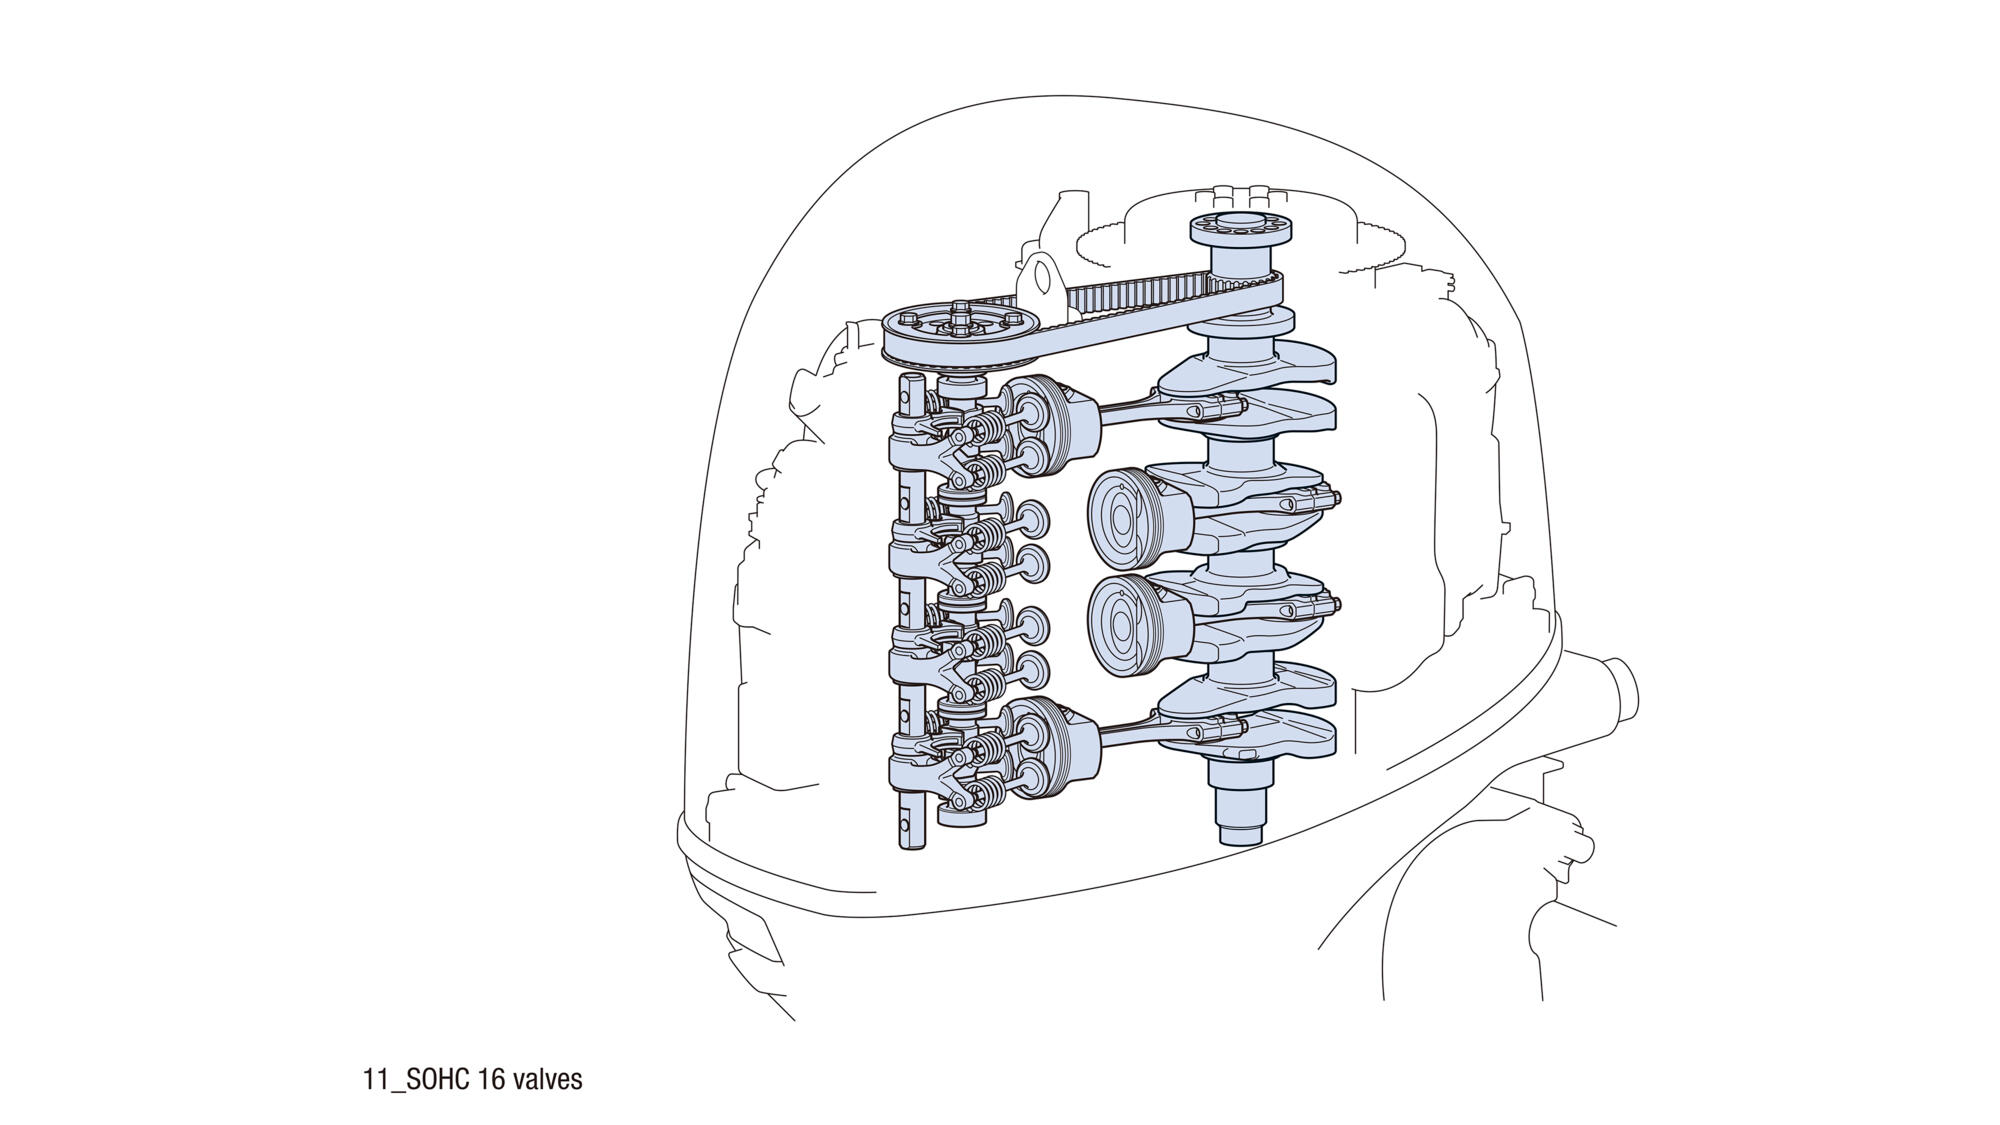 16-valve SOHC engine layout